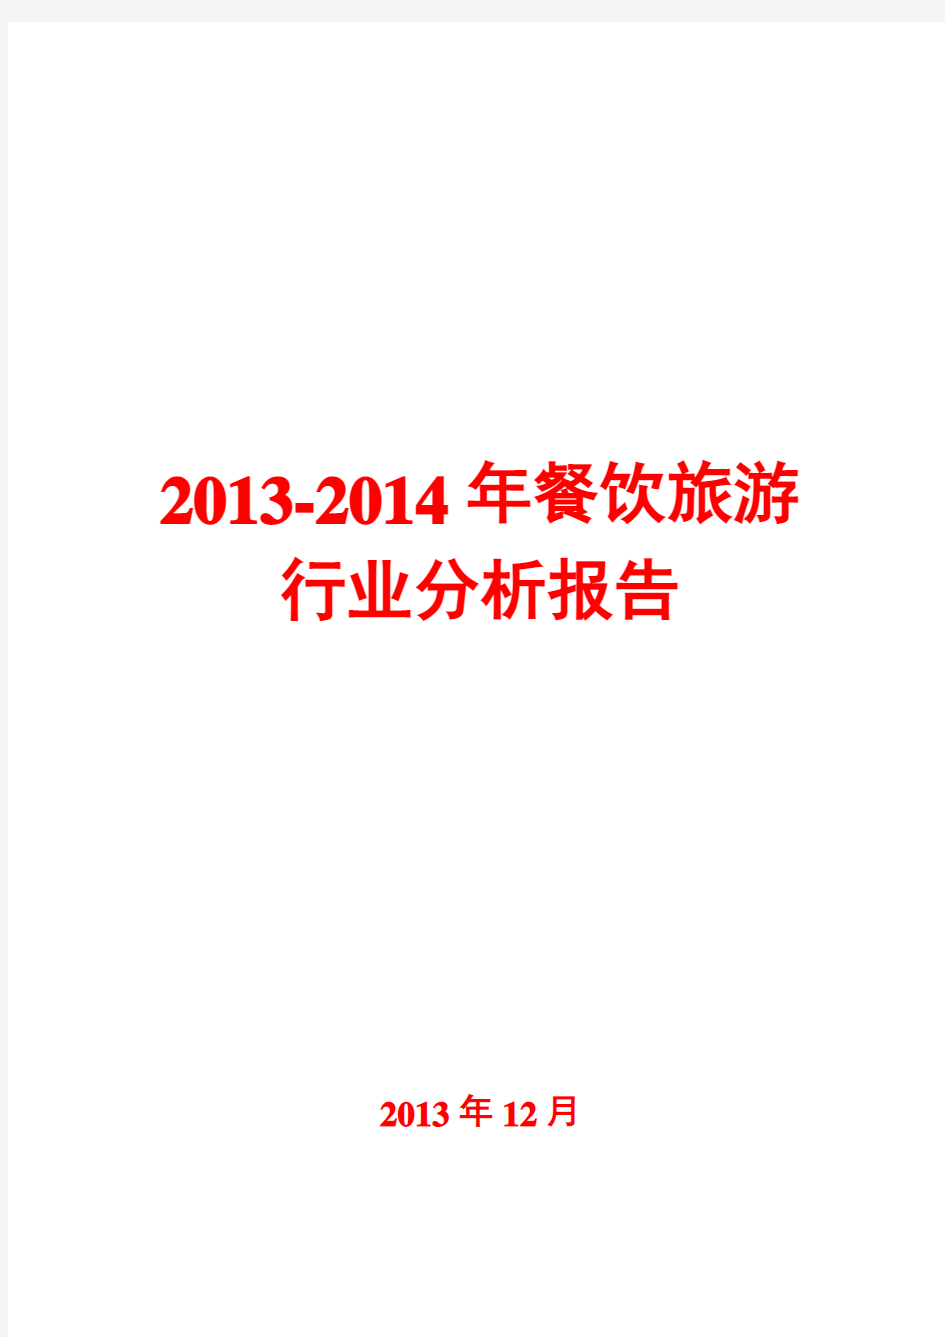 2013-2014年餐饮旅游行业分析报告